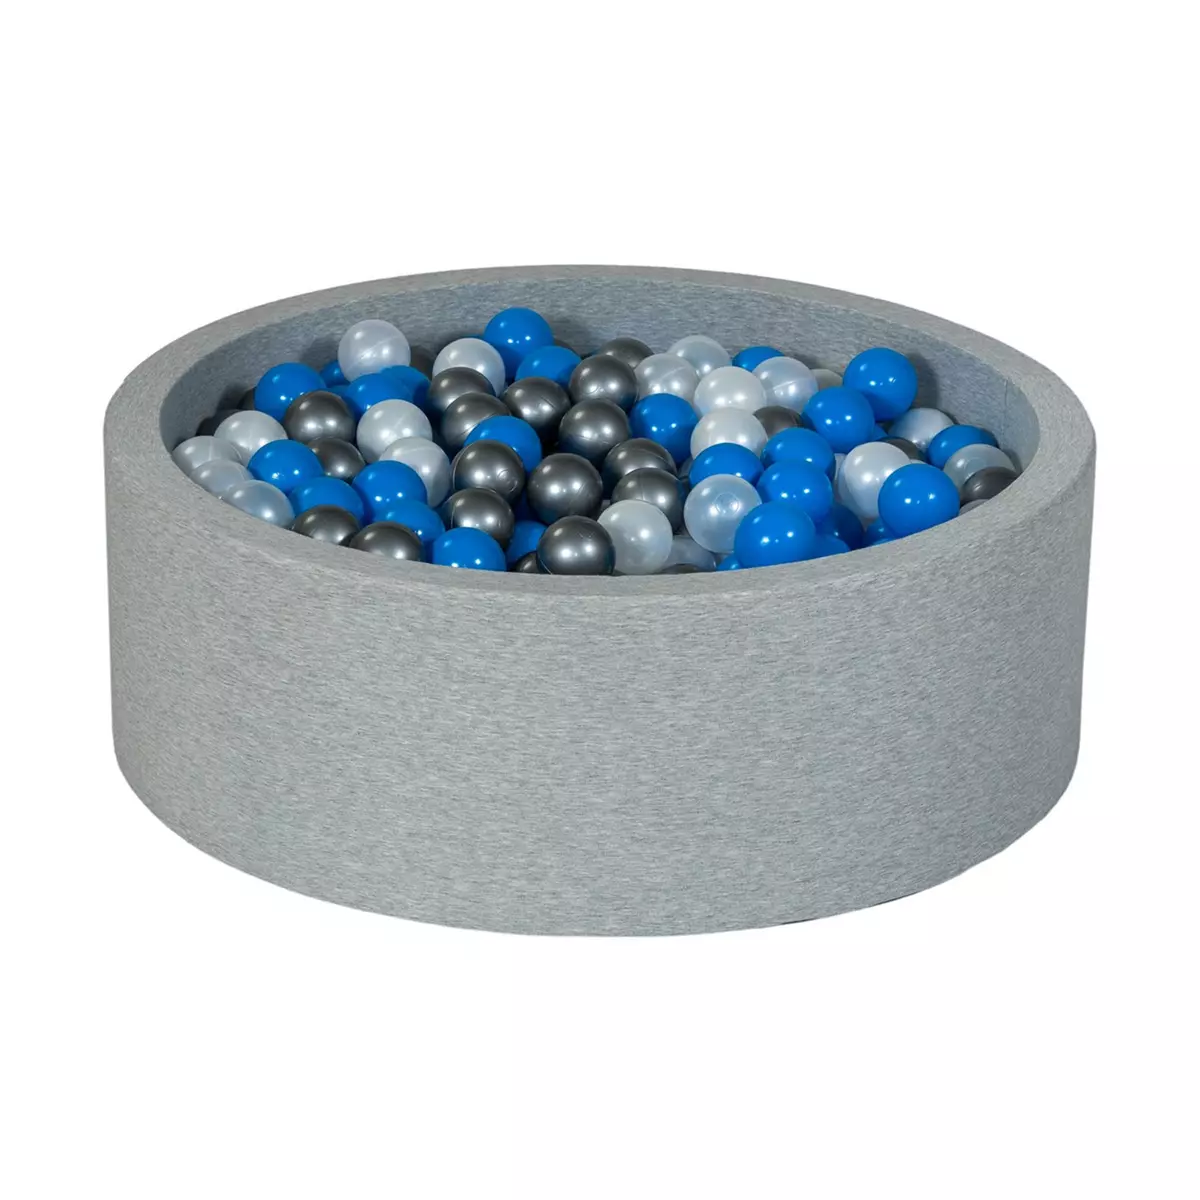  Piscine à balles Aire de jeu + 450 balles perle, bleu, argent